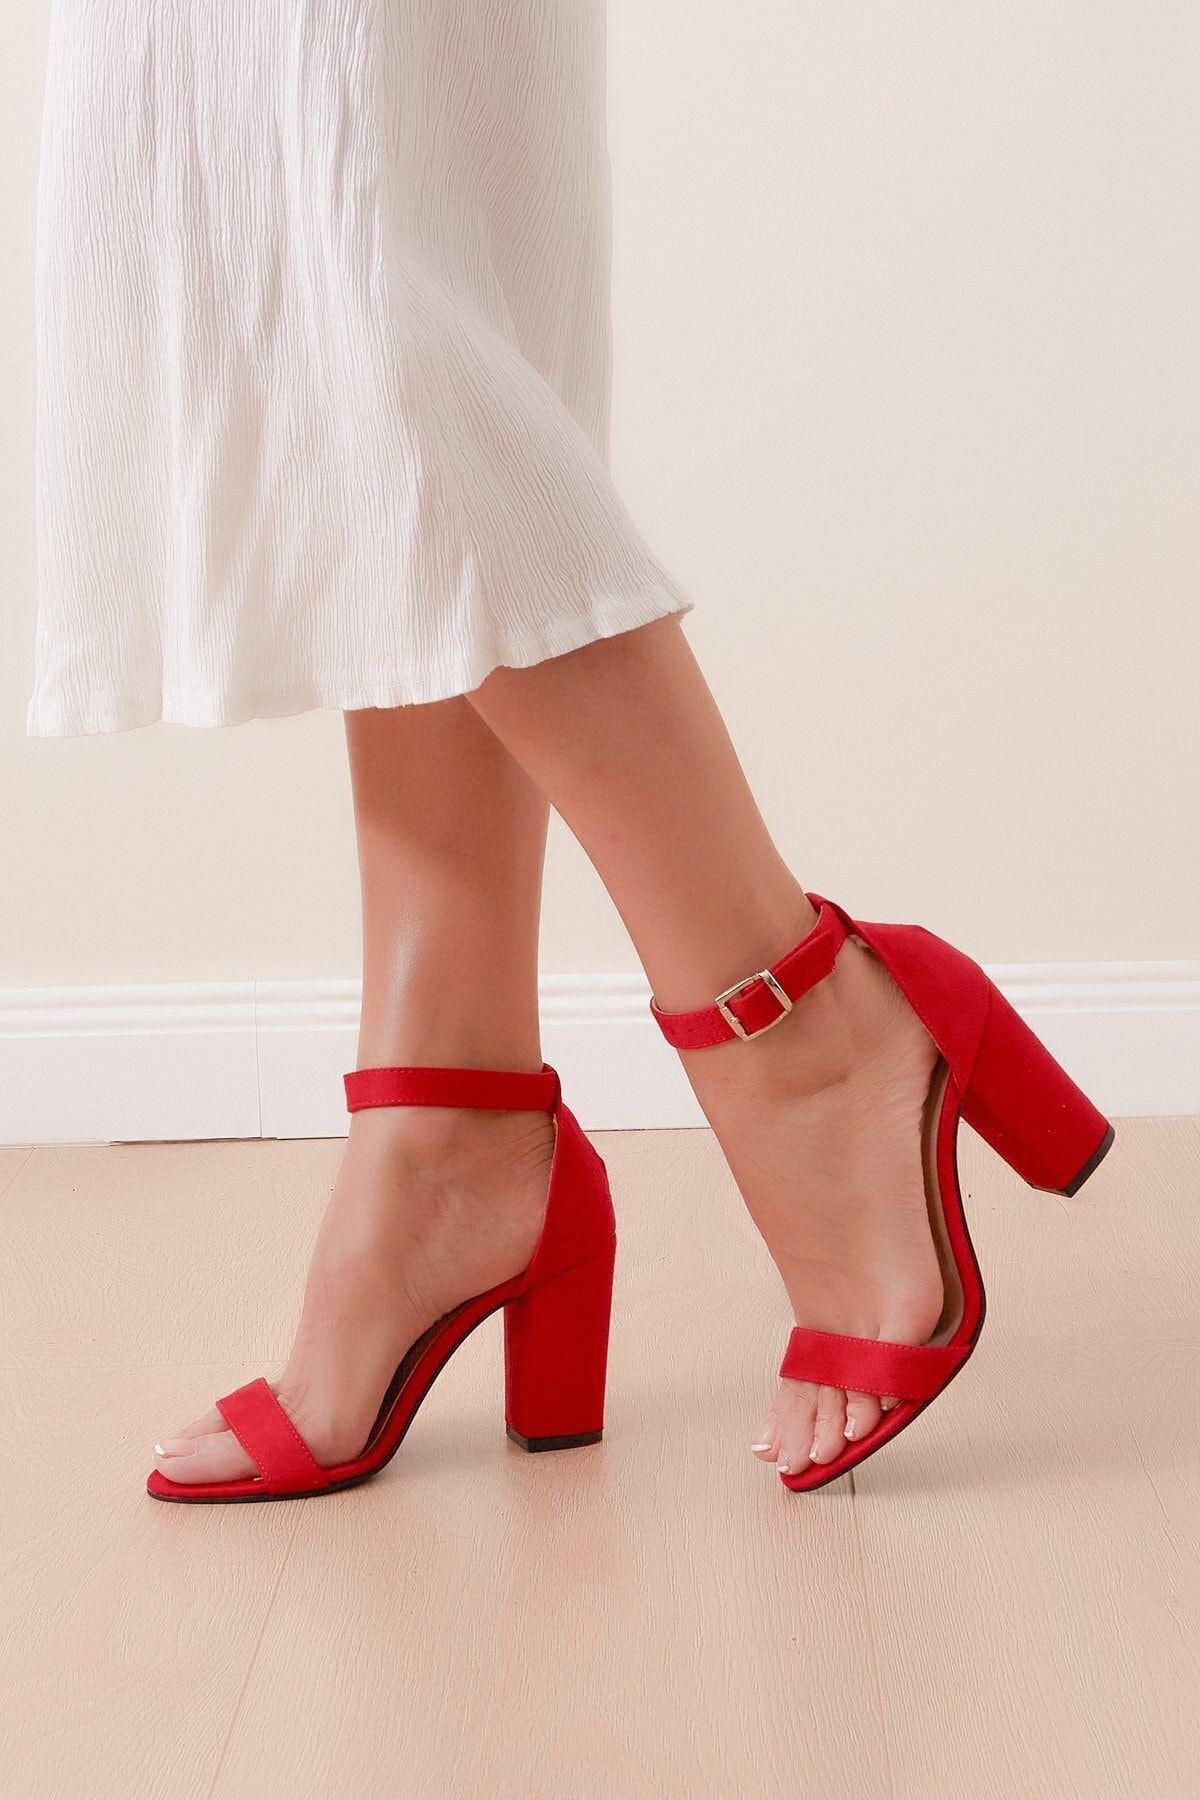 Shoes Time Kadın Kırmızı Topuklu Ayakkabı 20y 205